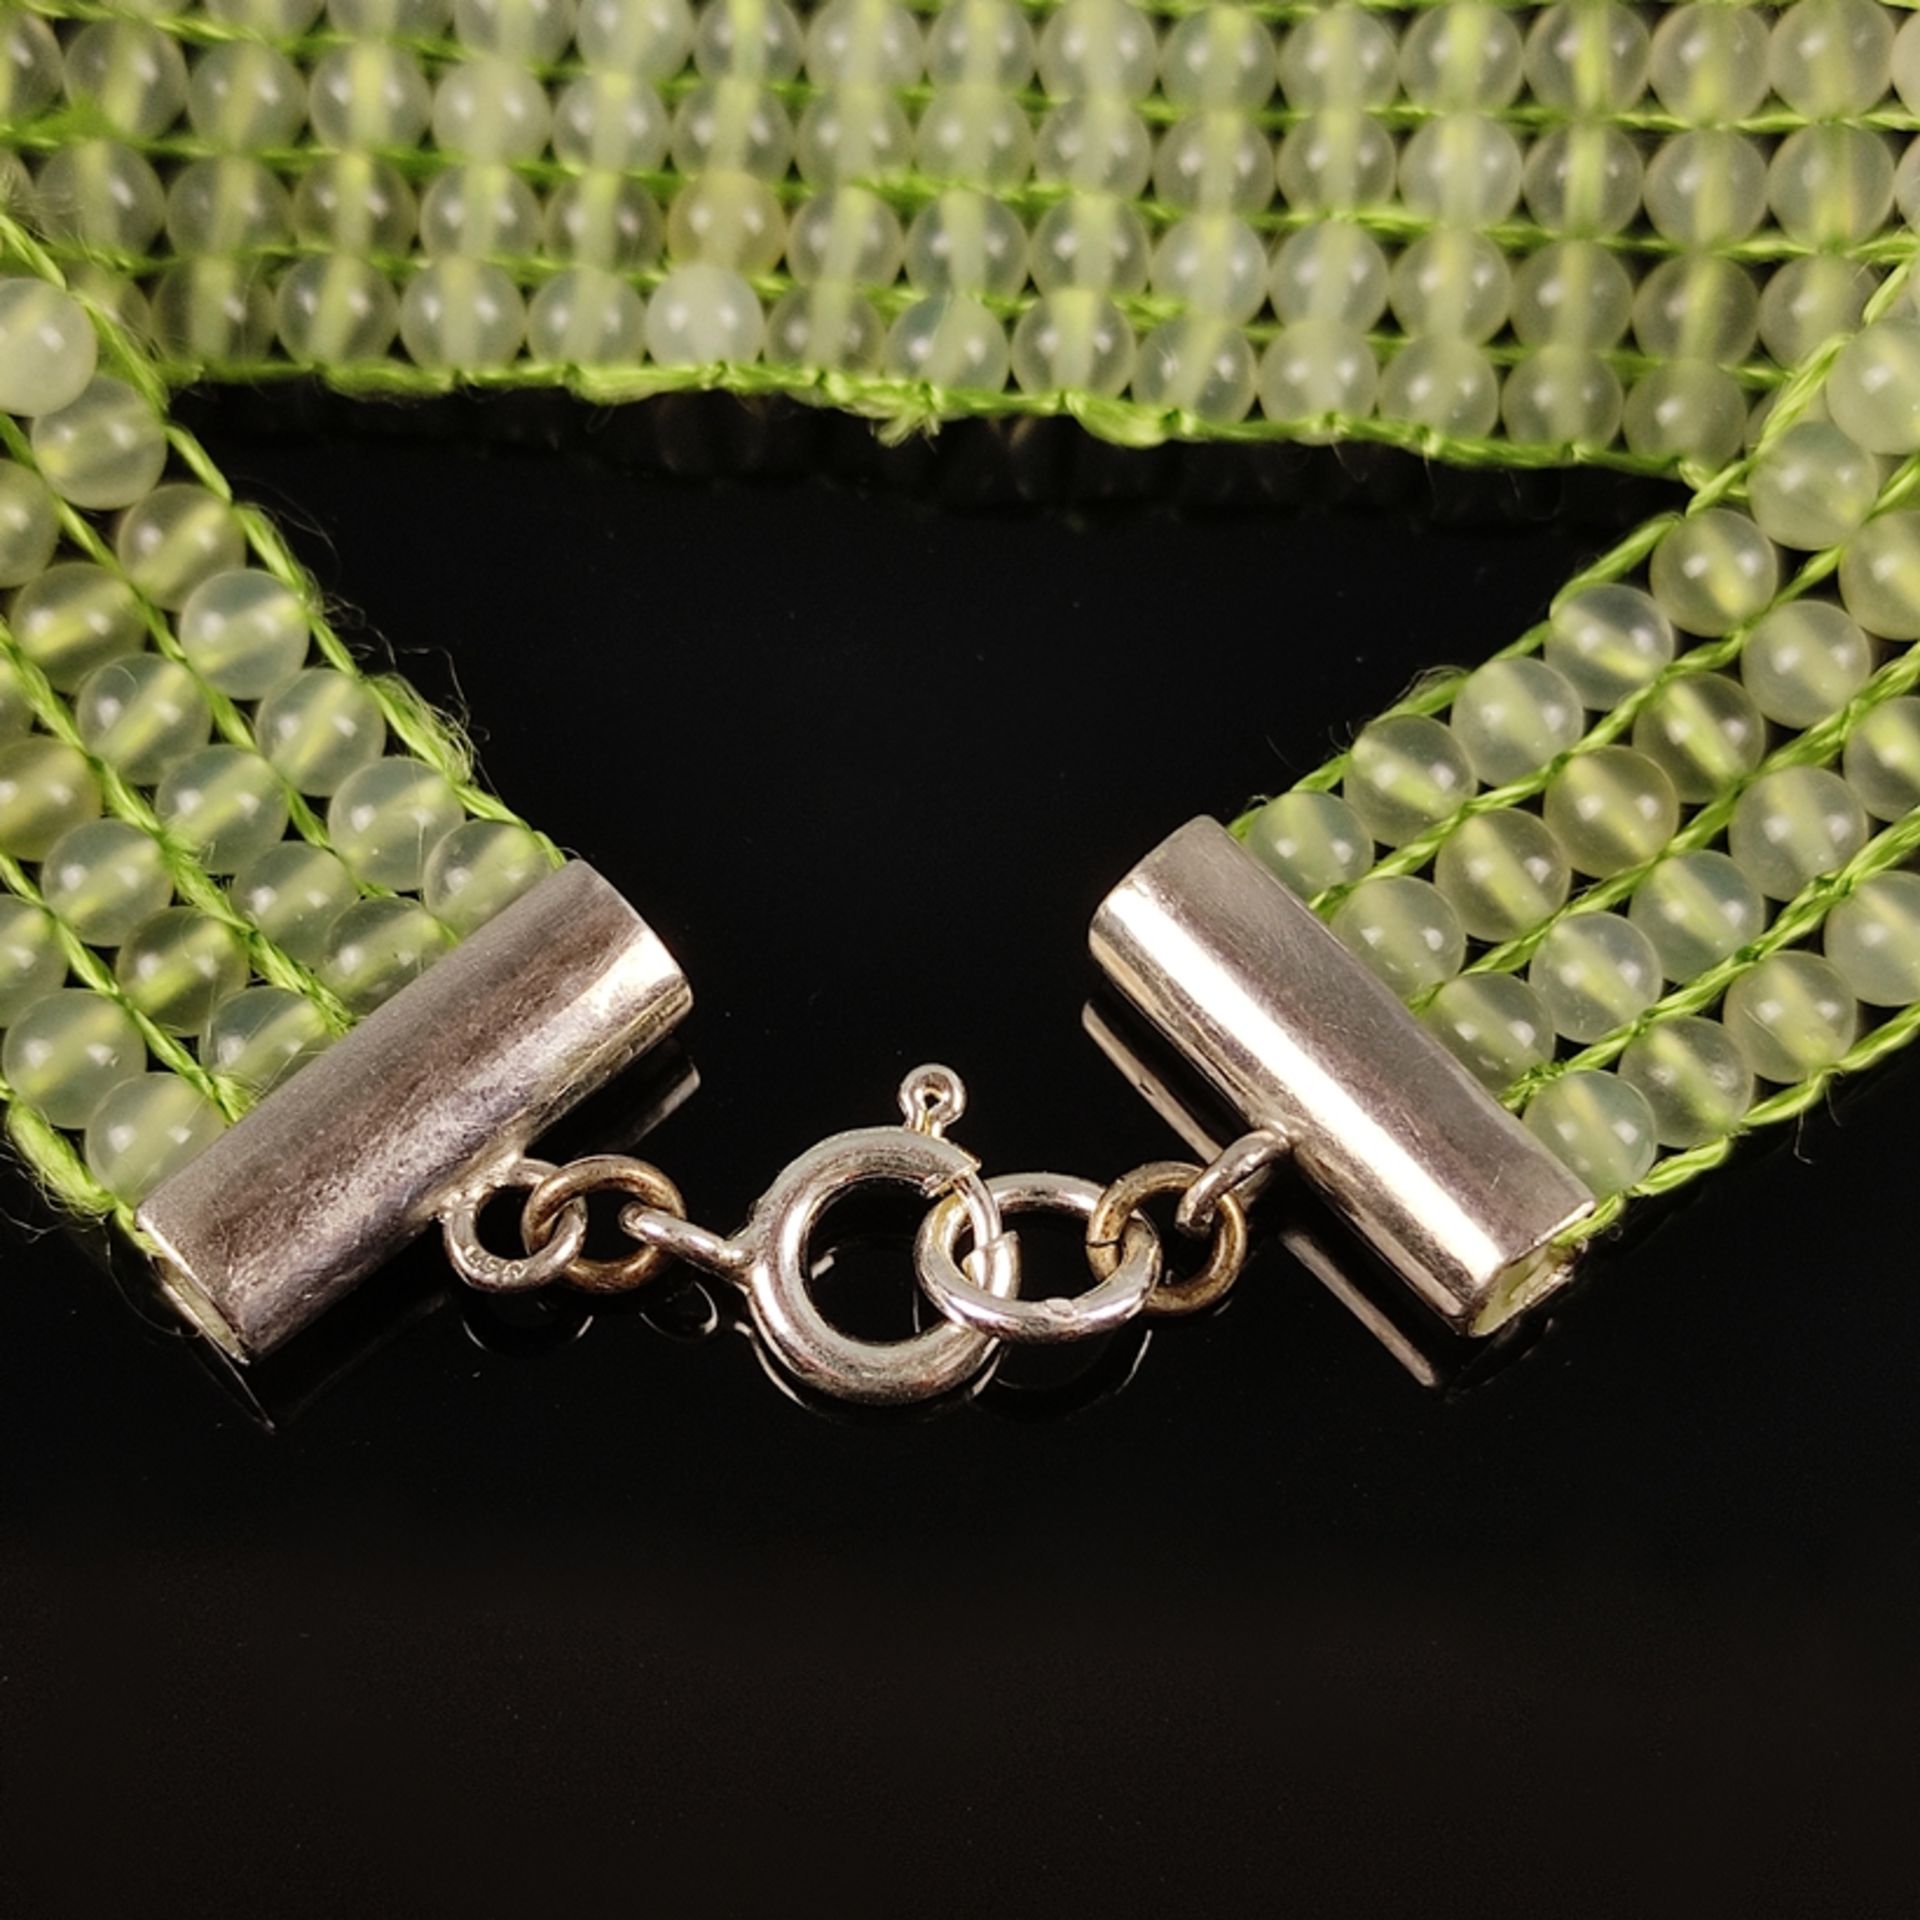 Jade-Armband, 4-reihig, Silber 925, Gesamtgewicht 18,4g, Geflecht-Armband aus hellgrüner, durchsche - Bild 3 aus 4